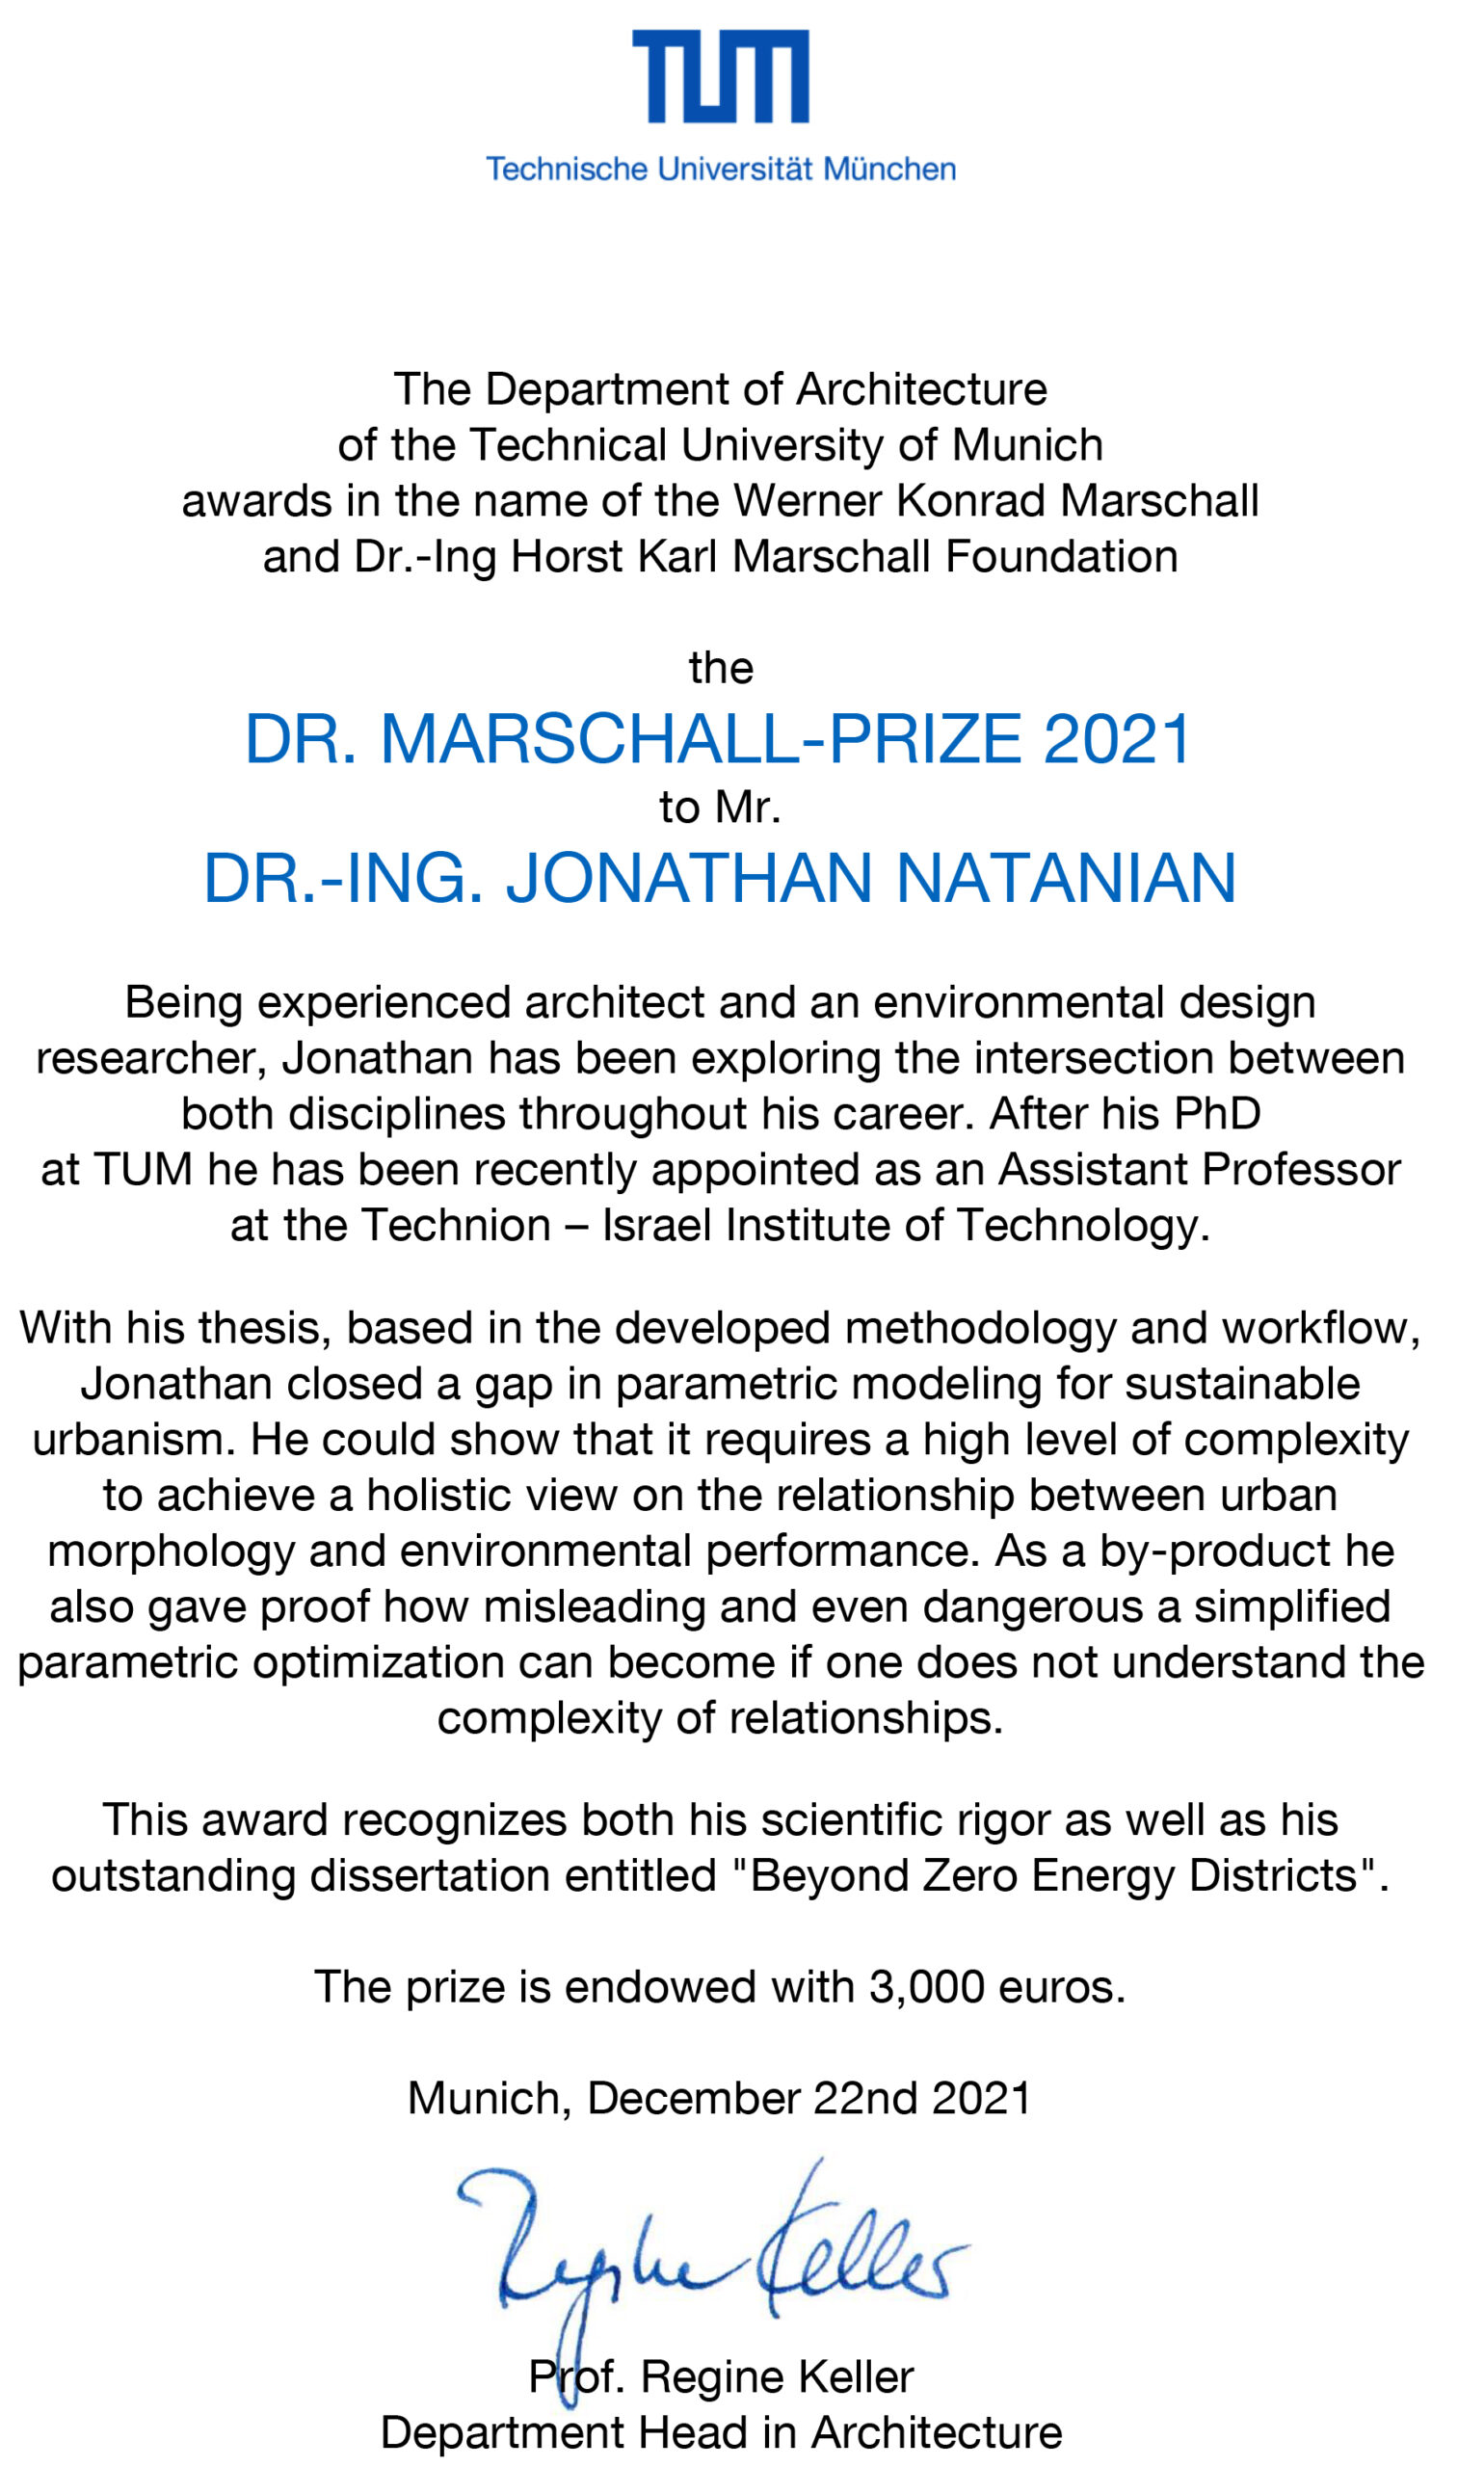 DR. MARSCHALL PRIZE TO DR. JONATHAN NATANIAN